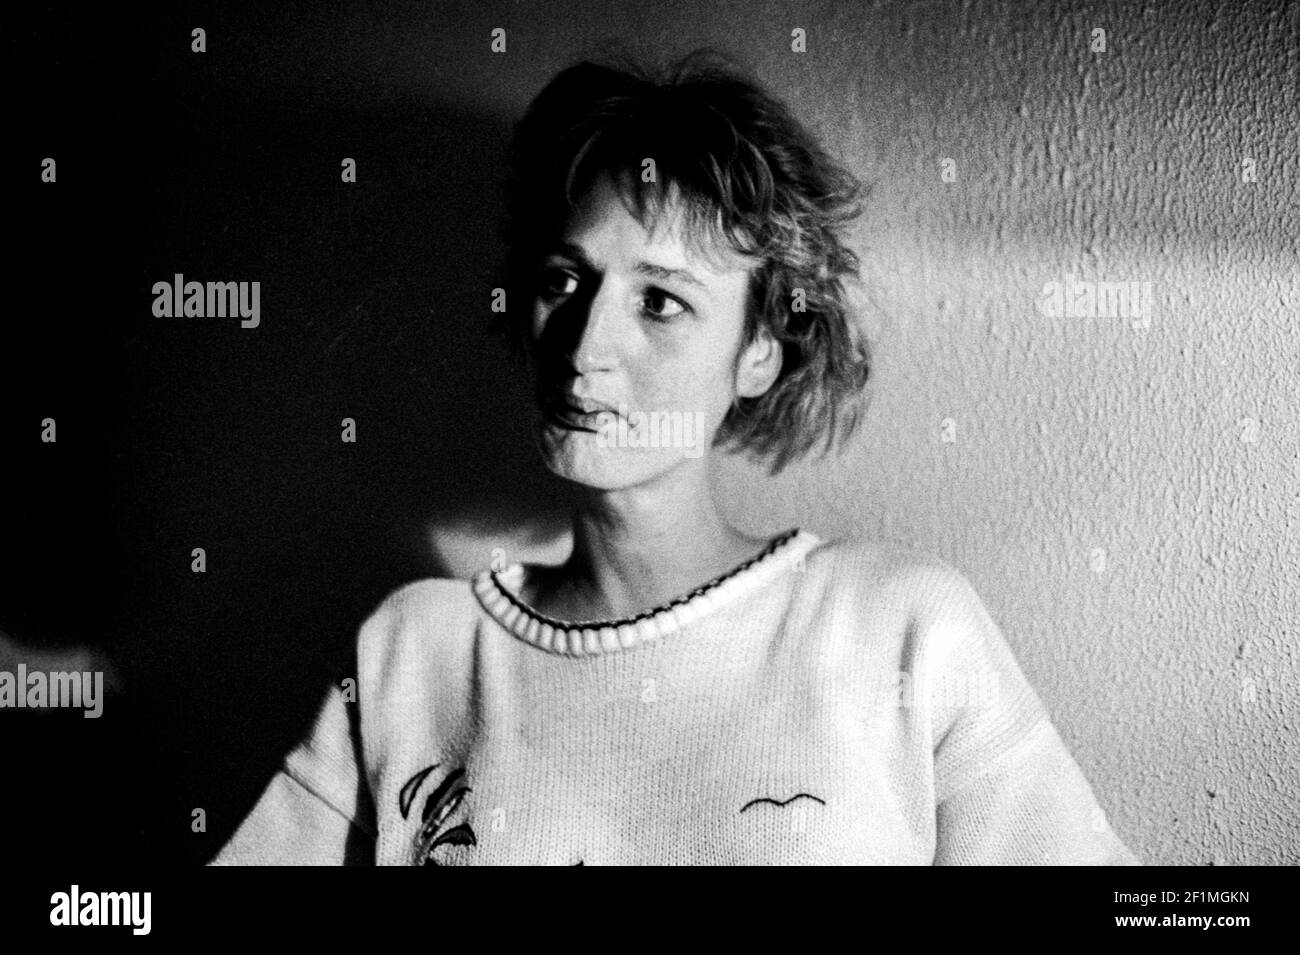 Tilburg, pays-Bas. Portrait en noir et blanc d'une jeune femme en studio avec une seule lumière de la gauche. Tourné sur un film noir et blanc analogique en 1992. Banque D'Images